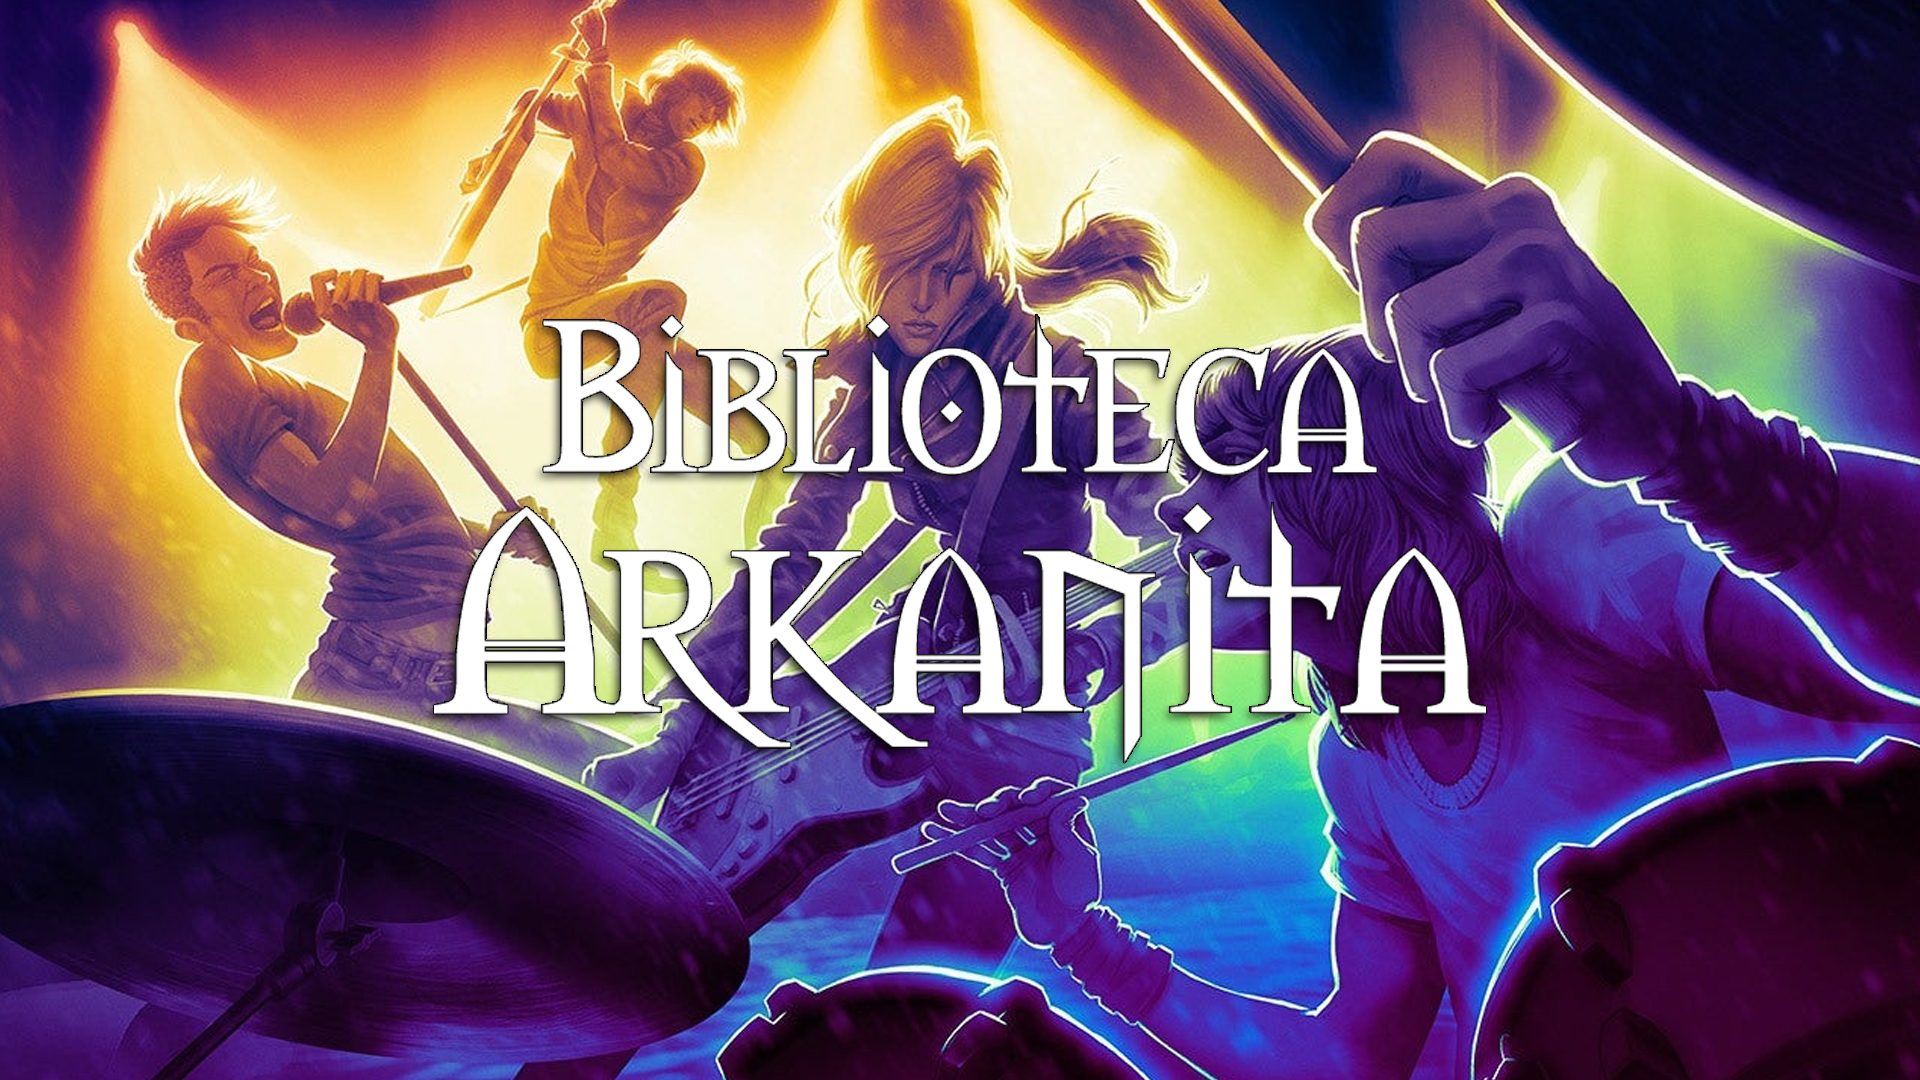 Rock and Roll - Biblioteca Arkanita